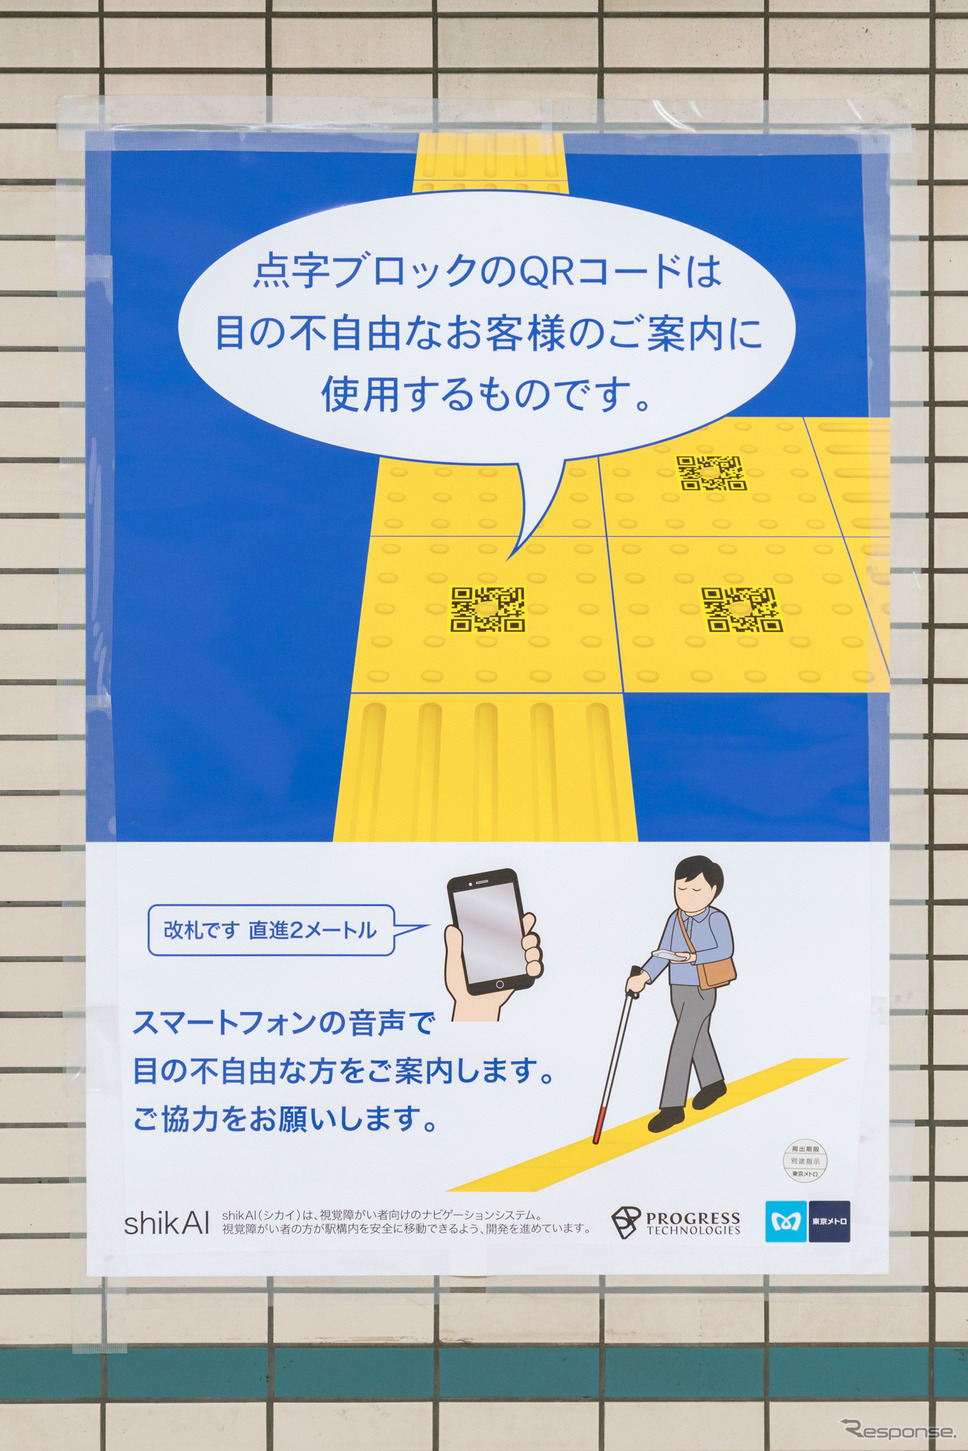 駅構内には、shikAIを紹介するポスターが貼られていた。《撮影 関口敬文》